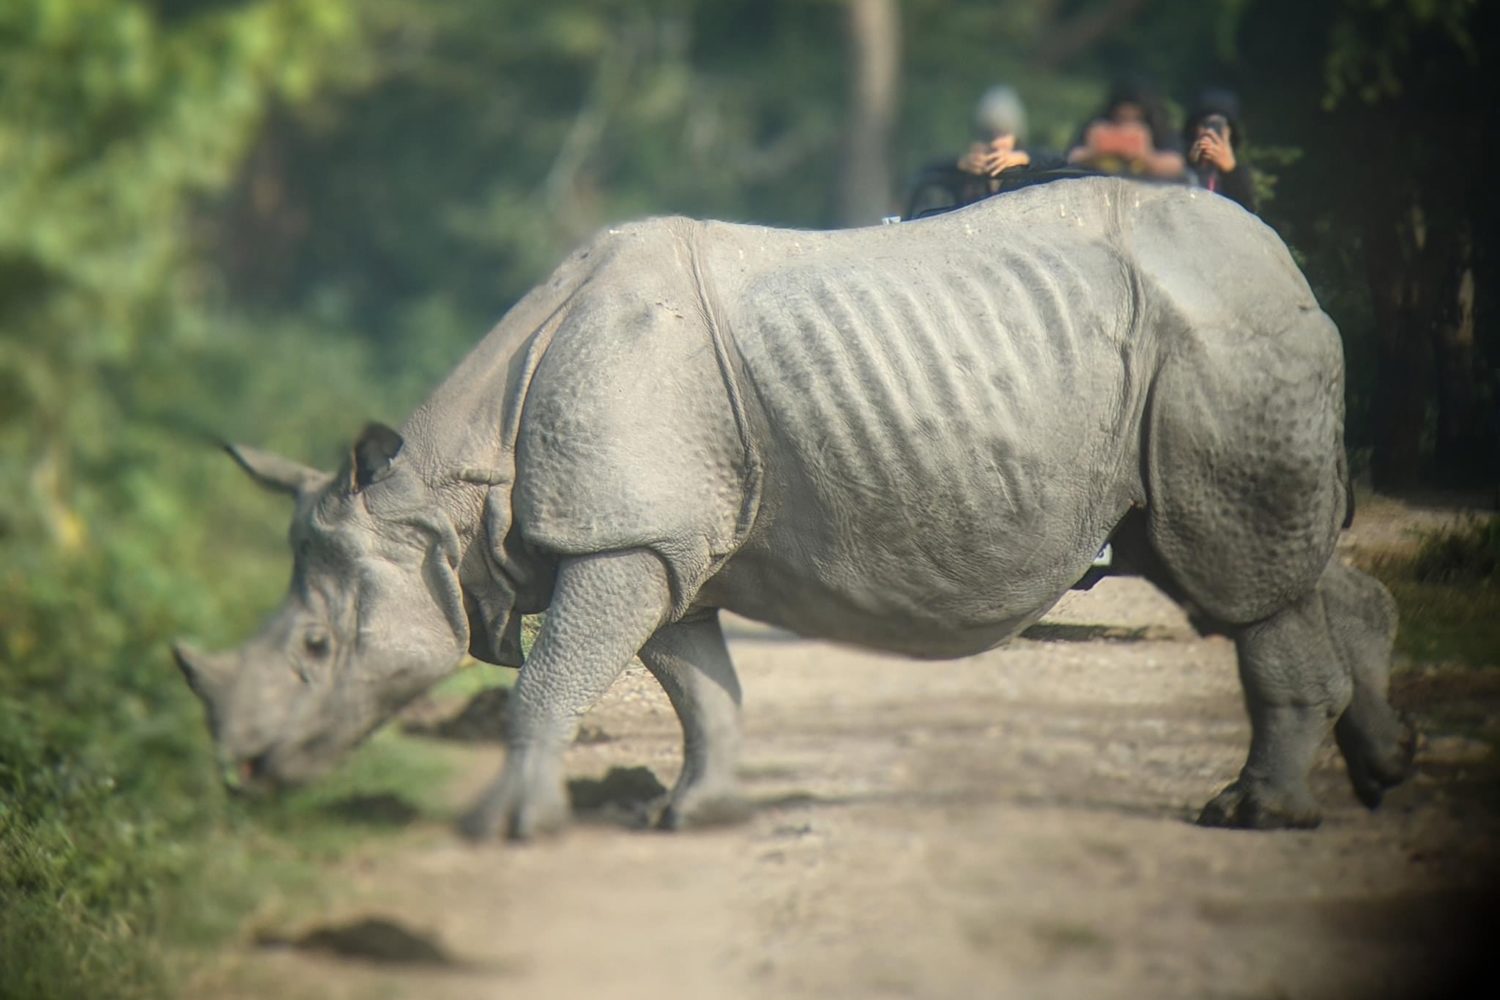 One horned rhino in Kaziranga